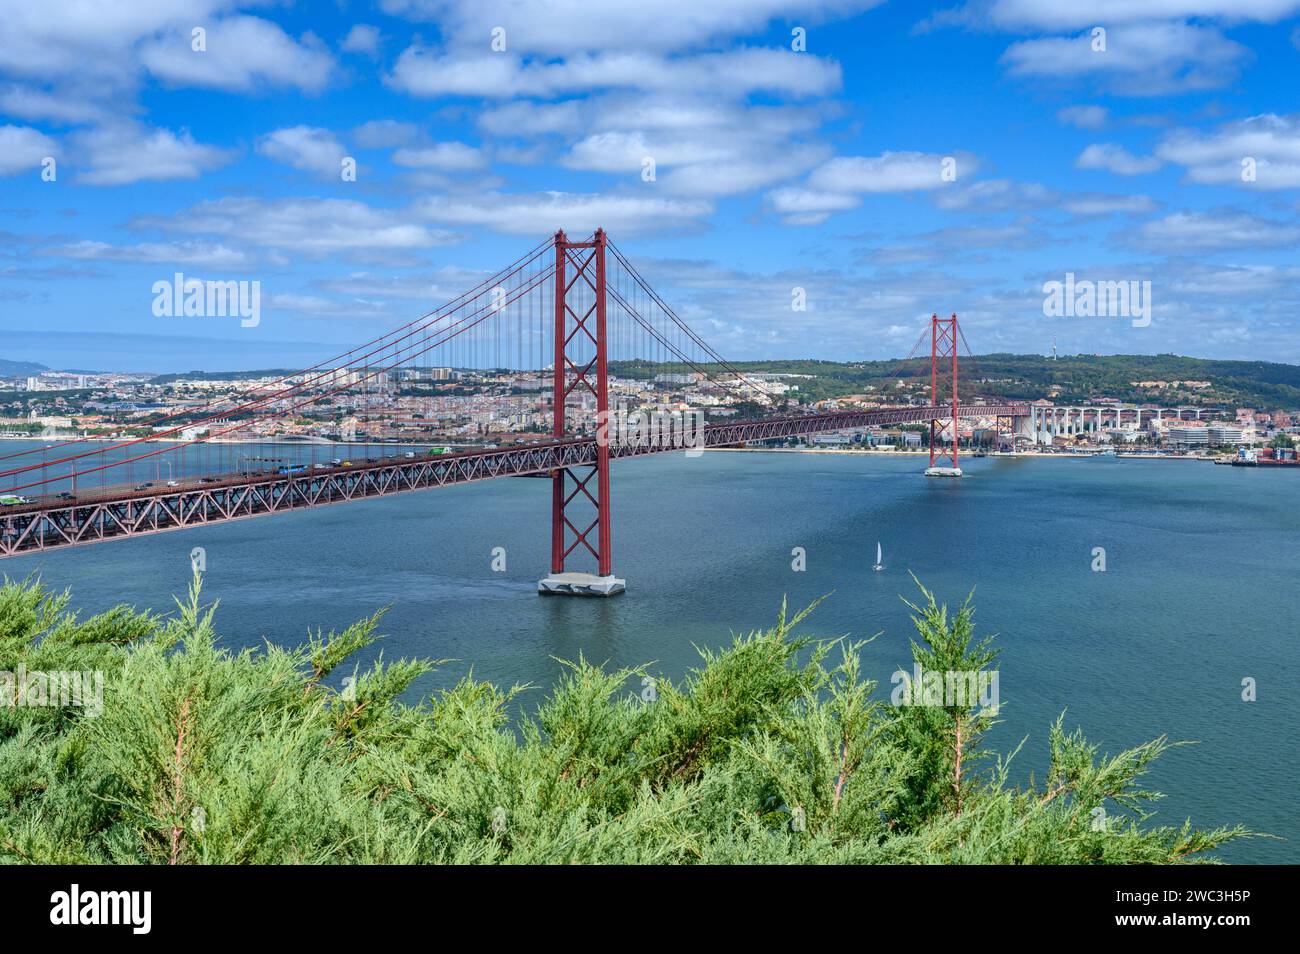 Il ponte 25 de Abril [Ponte 25 de Abril (Ponte 25 aprile)] che collega la città di Lisbona alla città di Almada sul fiume Tago. Foto Stock